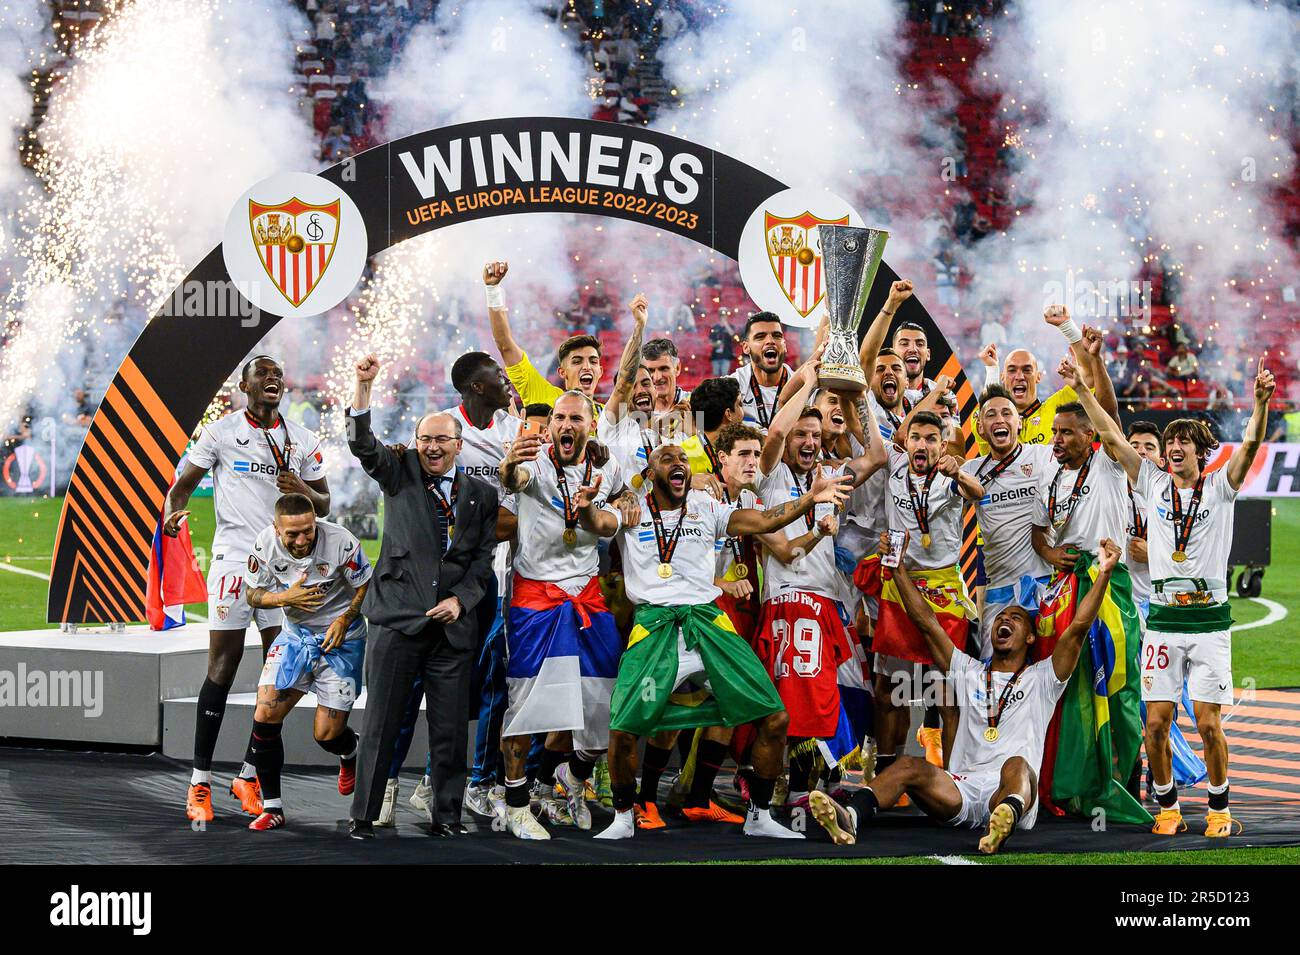 El Sevilla FC gana por séptima vez la Liga Europa de la UEFA - 01.06.2023,  Sputnik Mundo